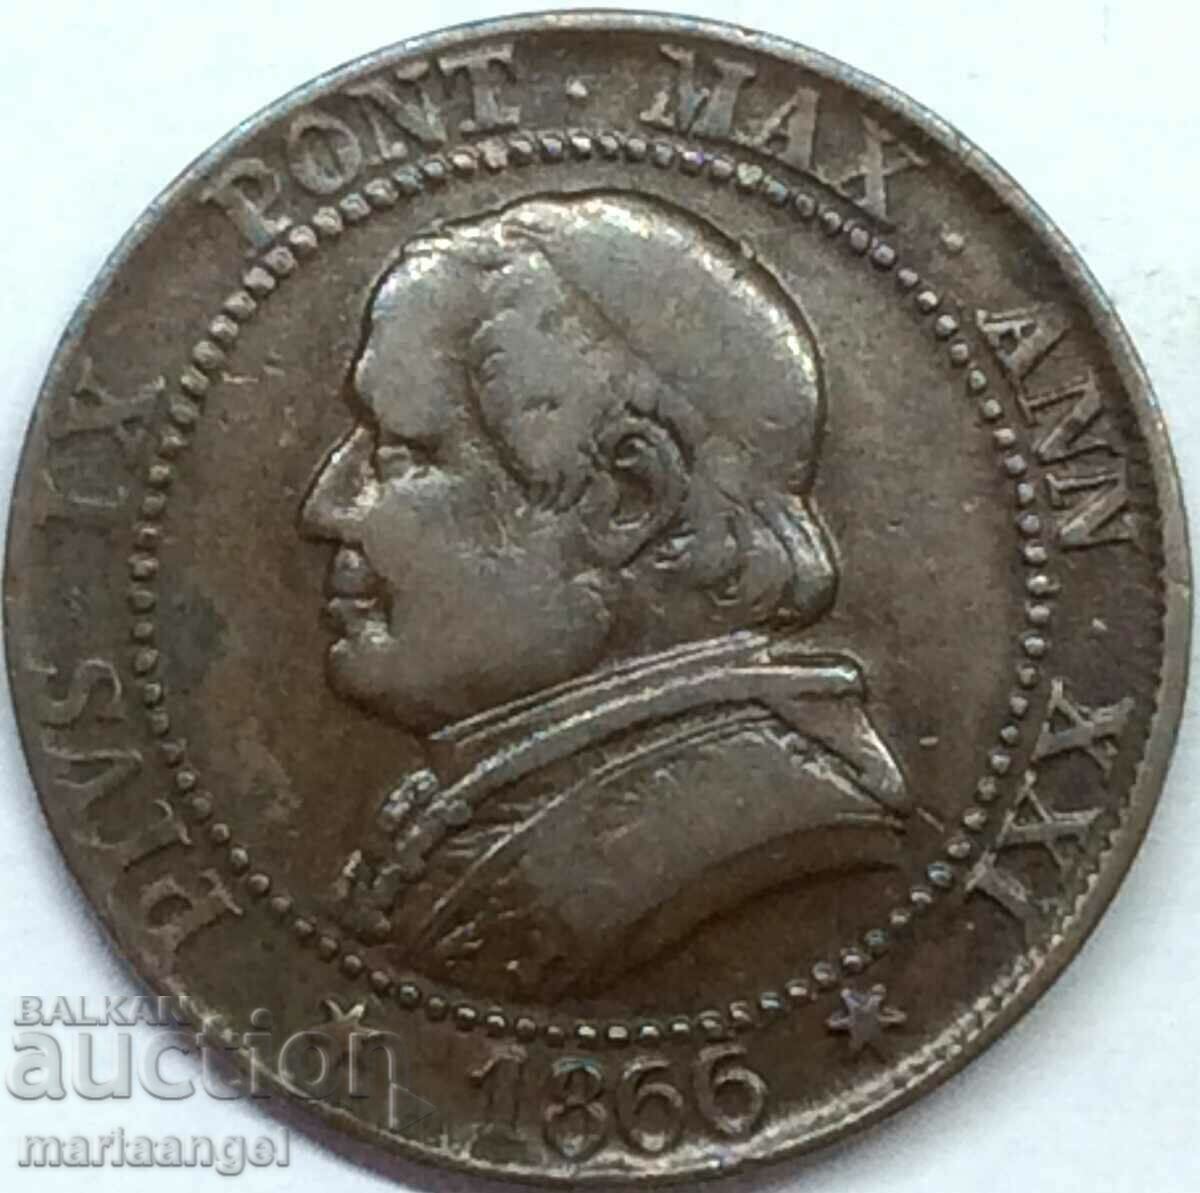 1 soldo 1866 5 centesimi Vatican Pius IX 32mm bronze